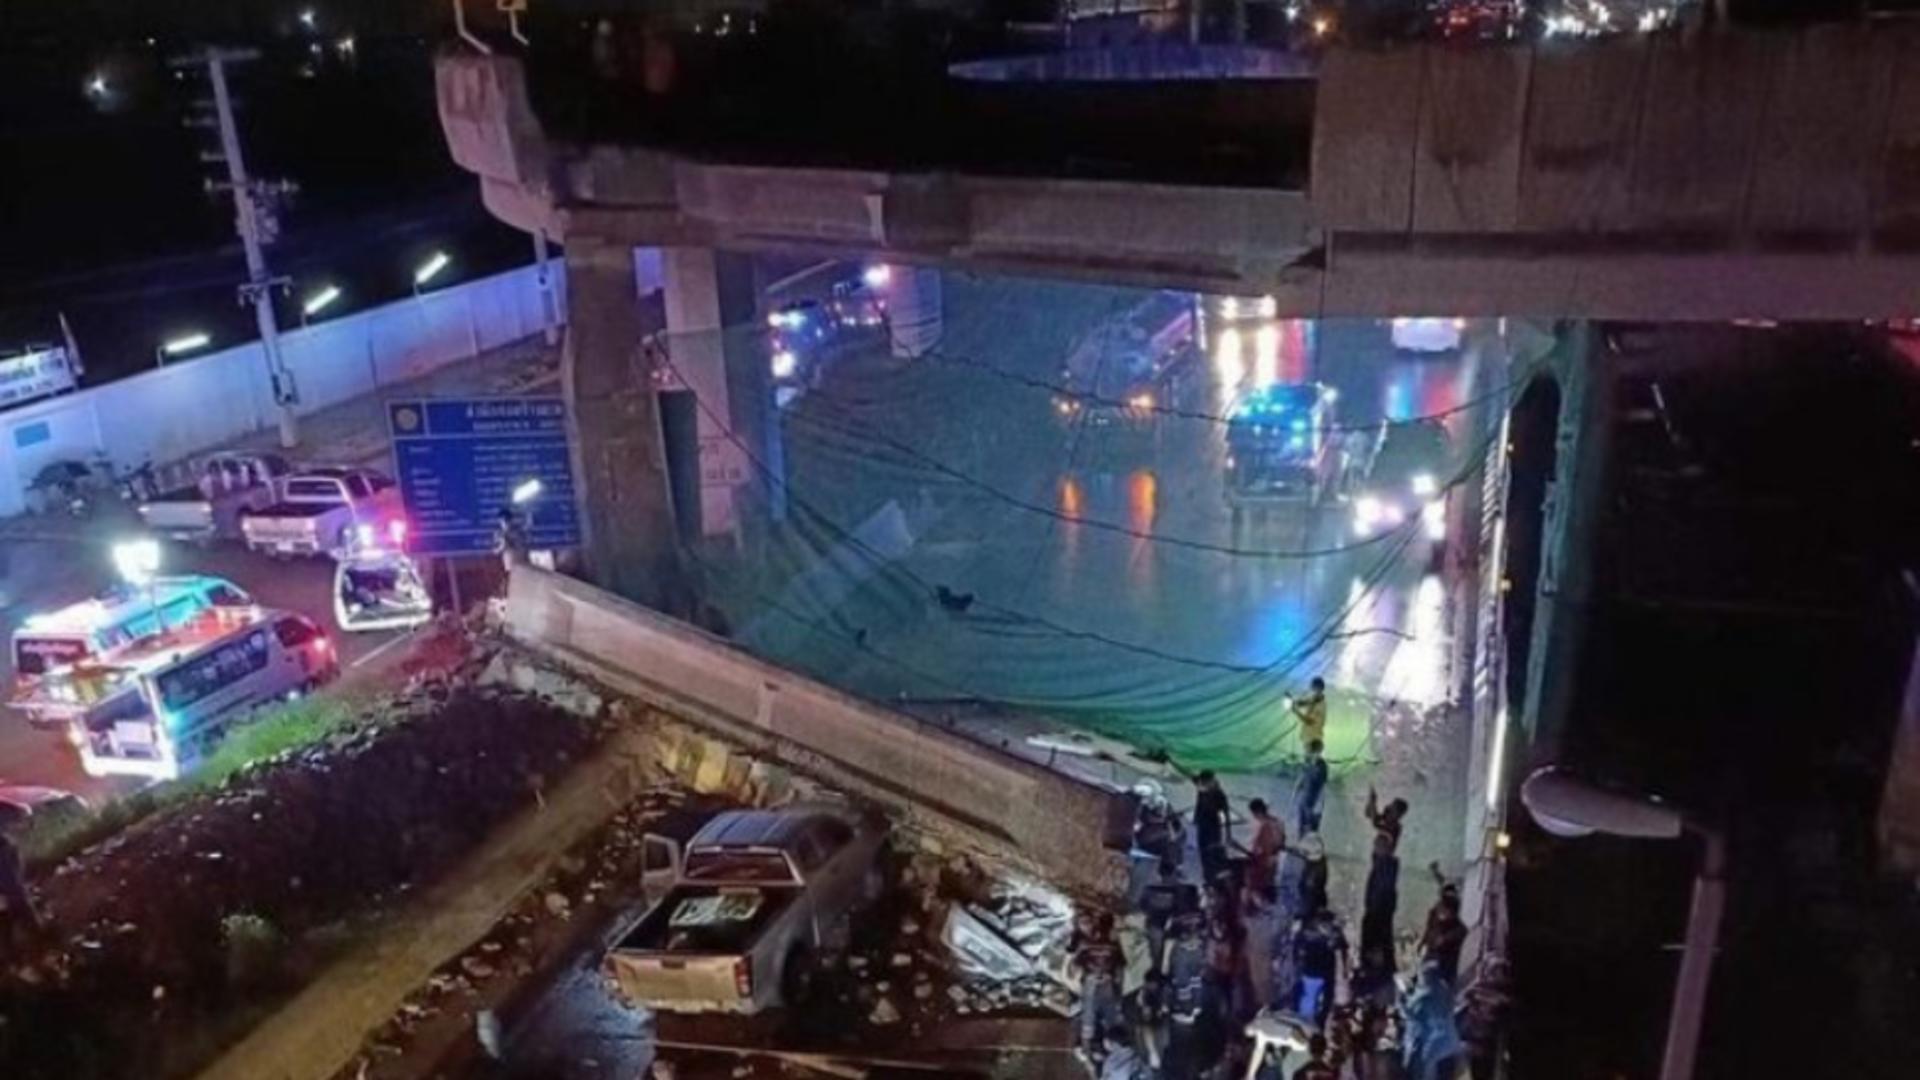 Pod prăbușit peste mașinile de pe o autostradă / Foto: Profi Media